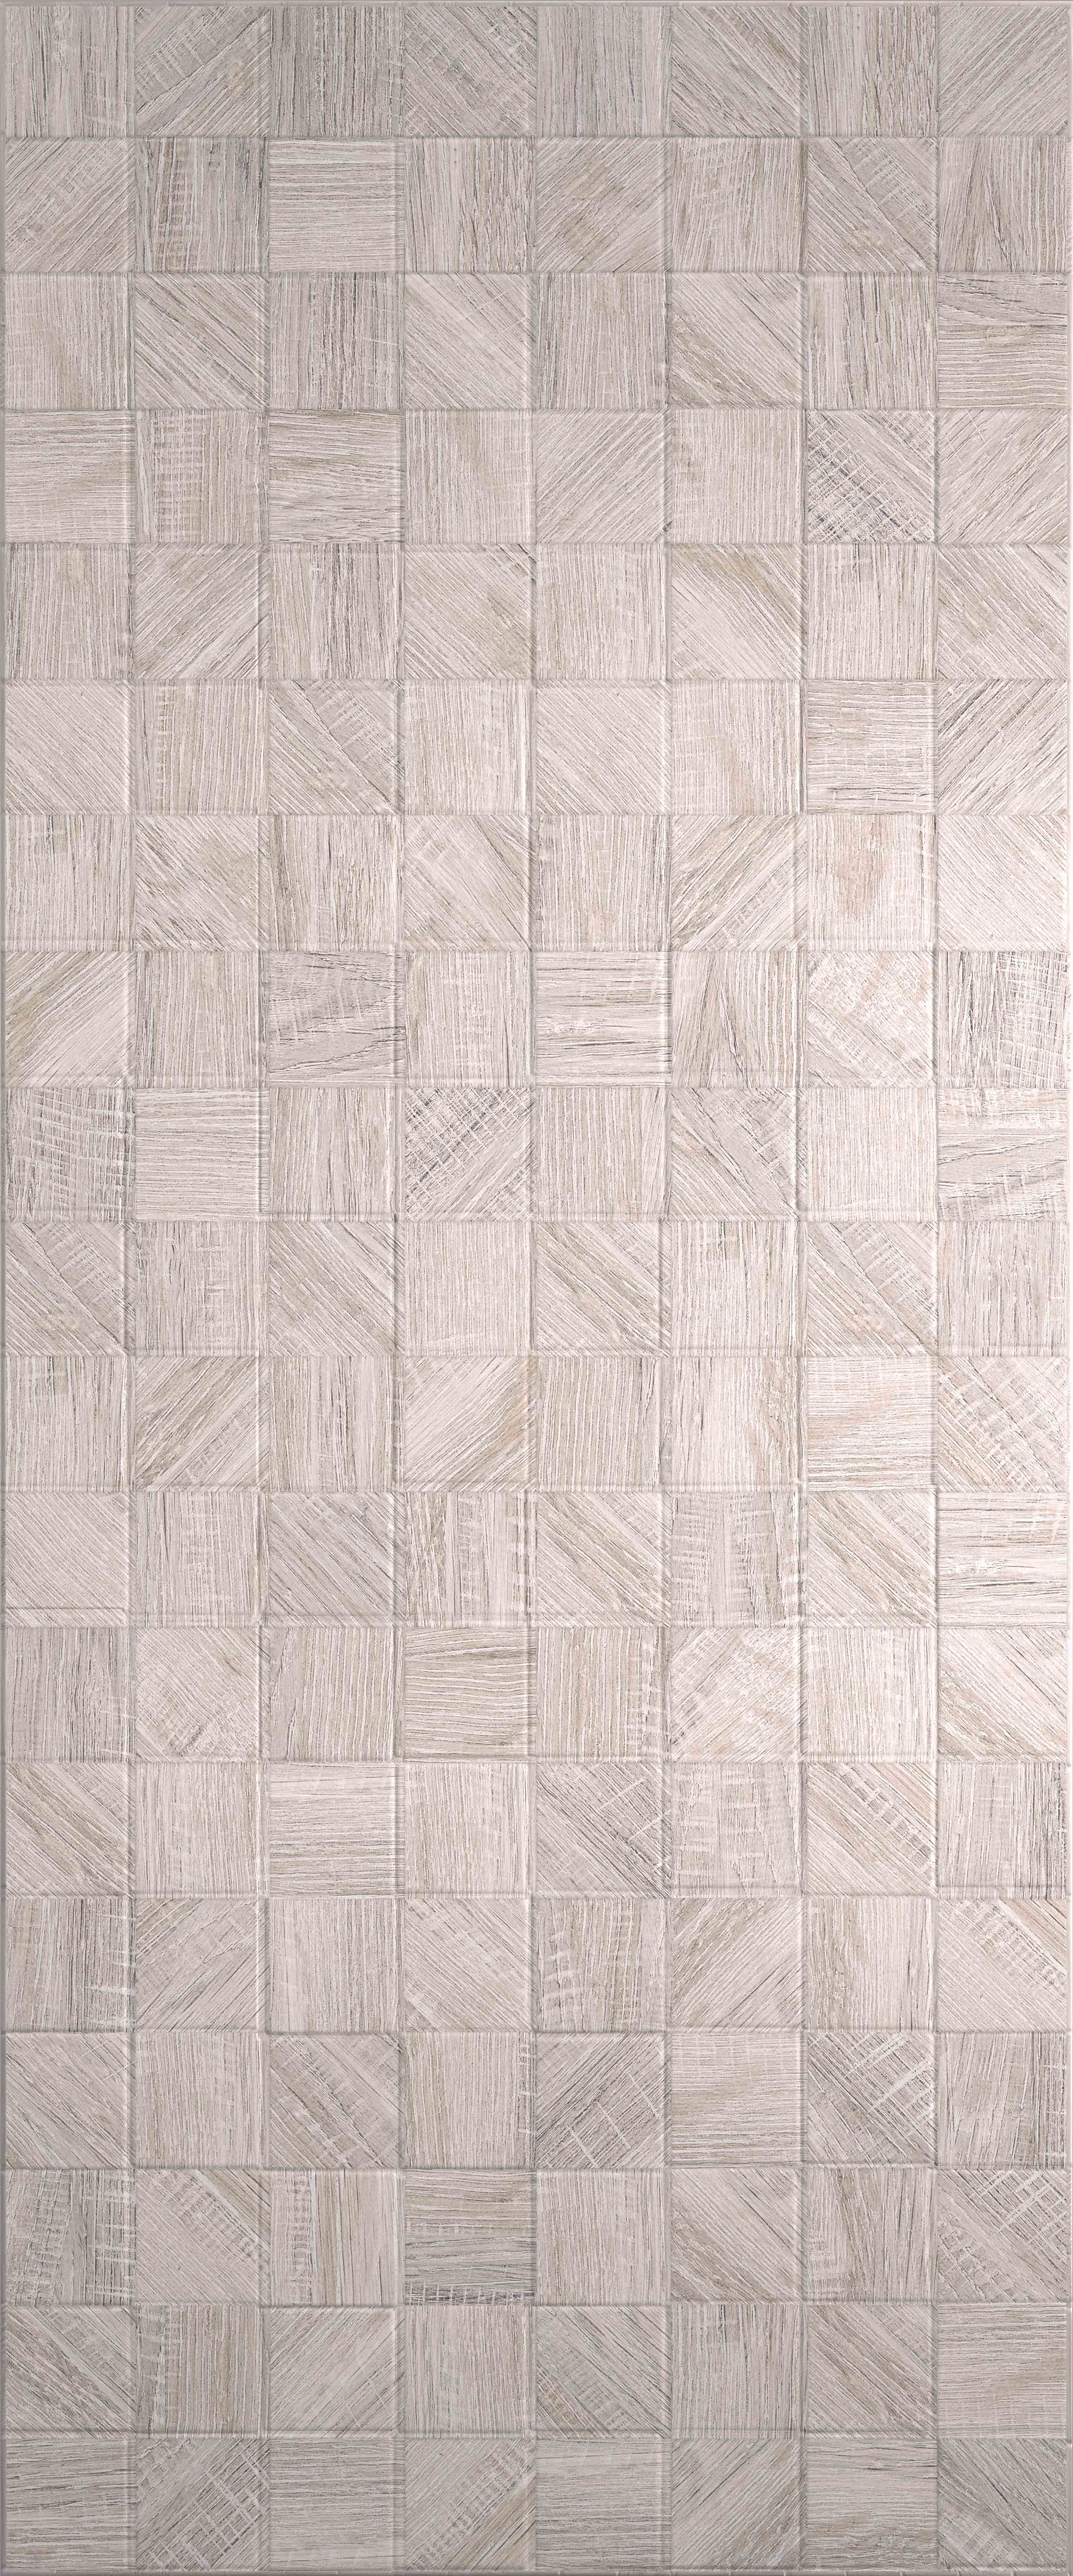 керамическая плитка creto effetto wood mosaico grey a0425h29603 настенная 25х60 см Плитка Effetto Wood Mosaico Grey 03 25х60